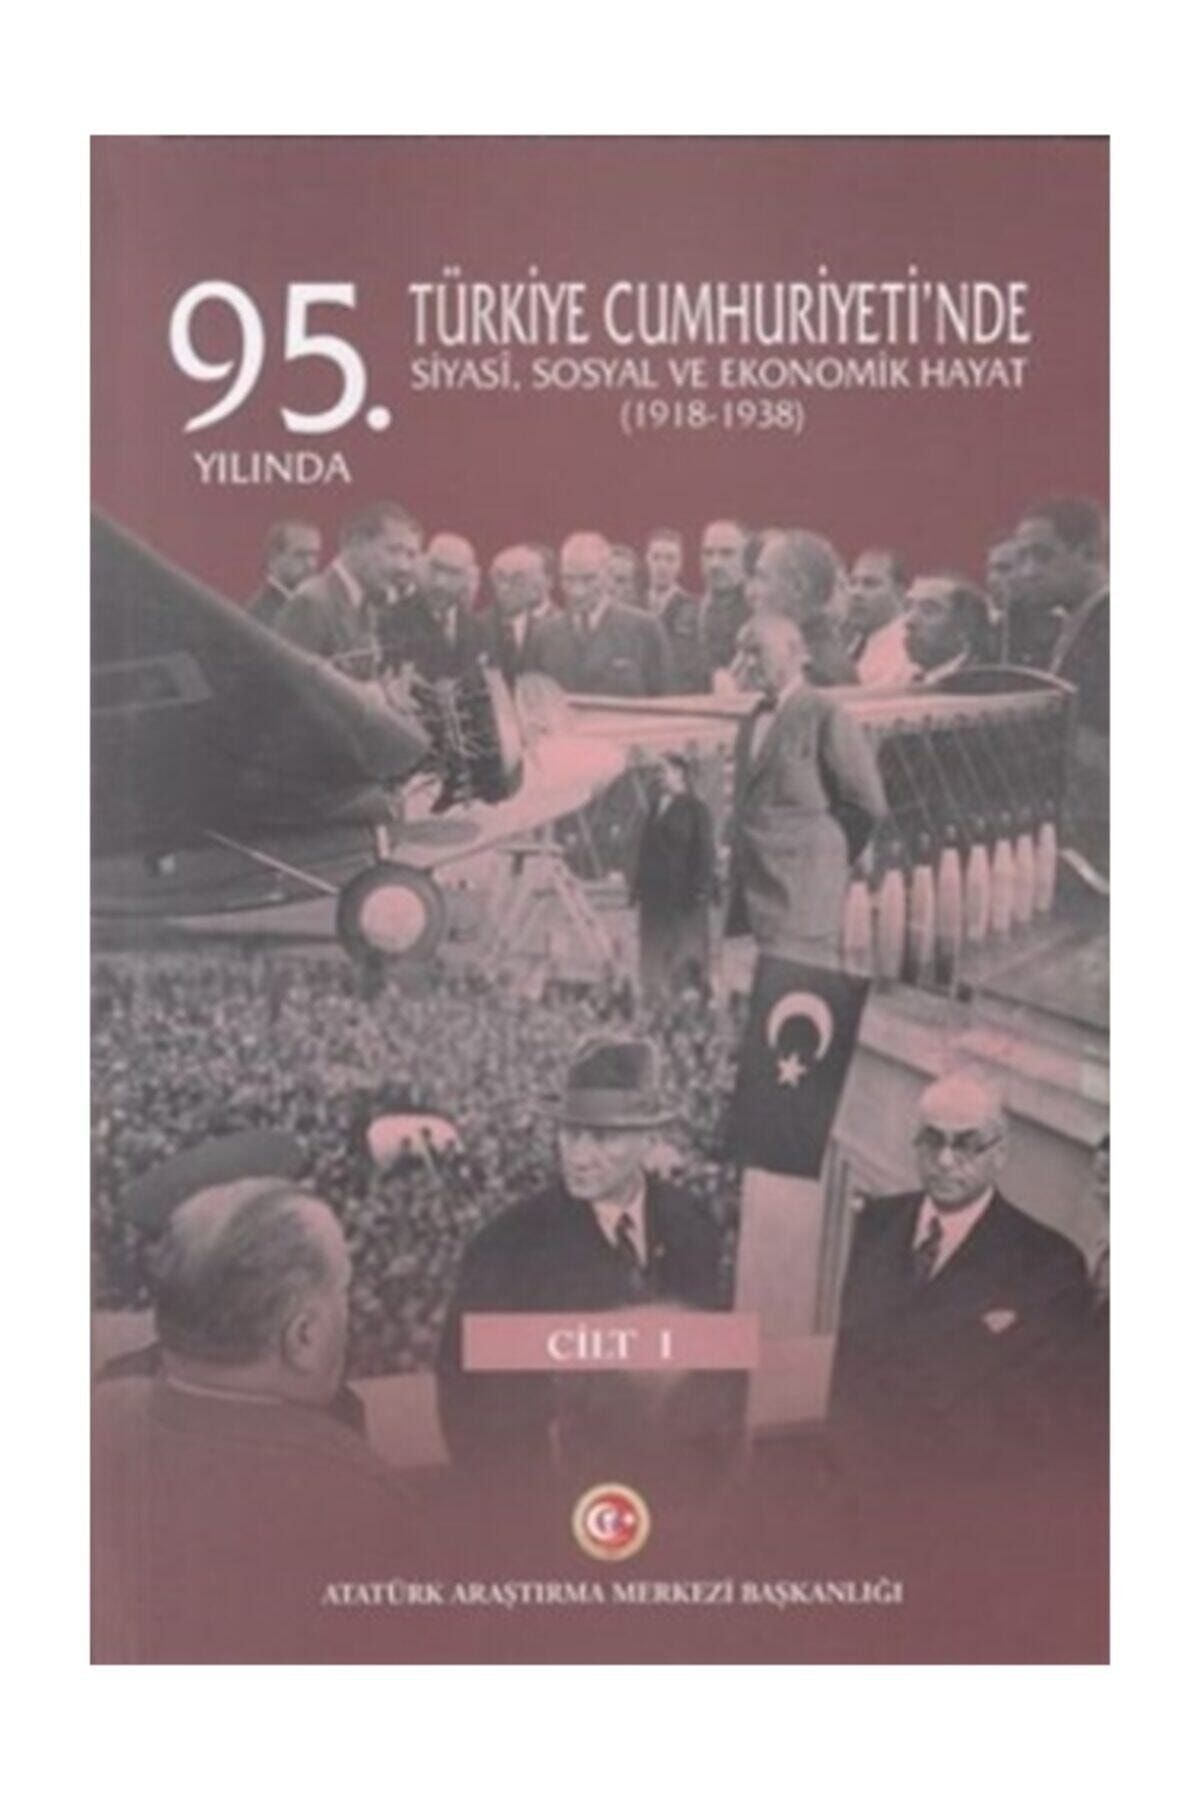 Atatürk Araştırma Merkezi 95. Yılında Türkiye Cumhuriyeti'nde Siyasi Sosyal Ve Ekonomik Hayat 1918-1938